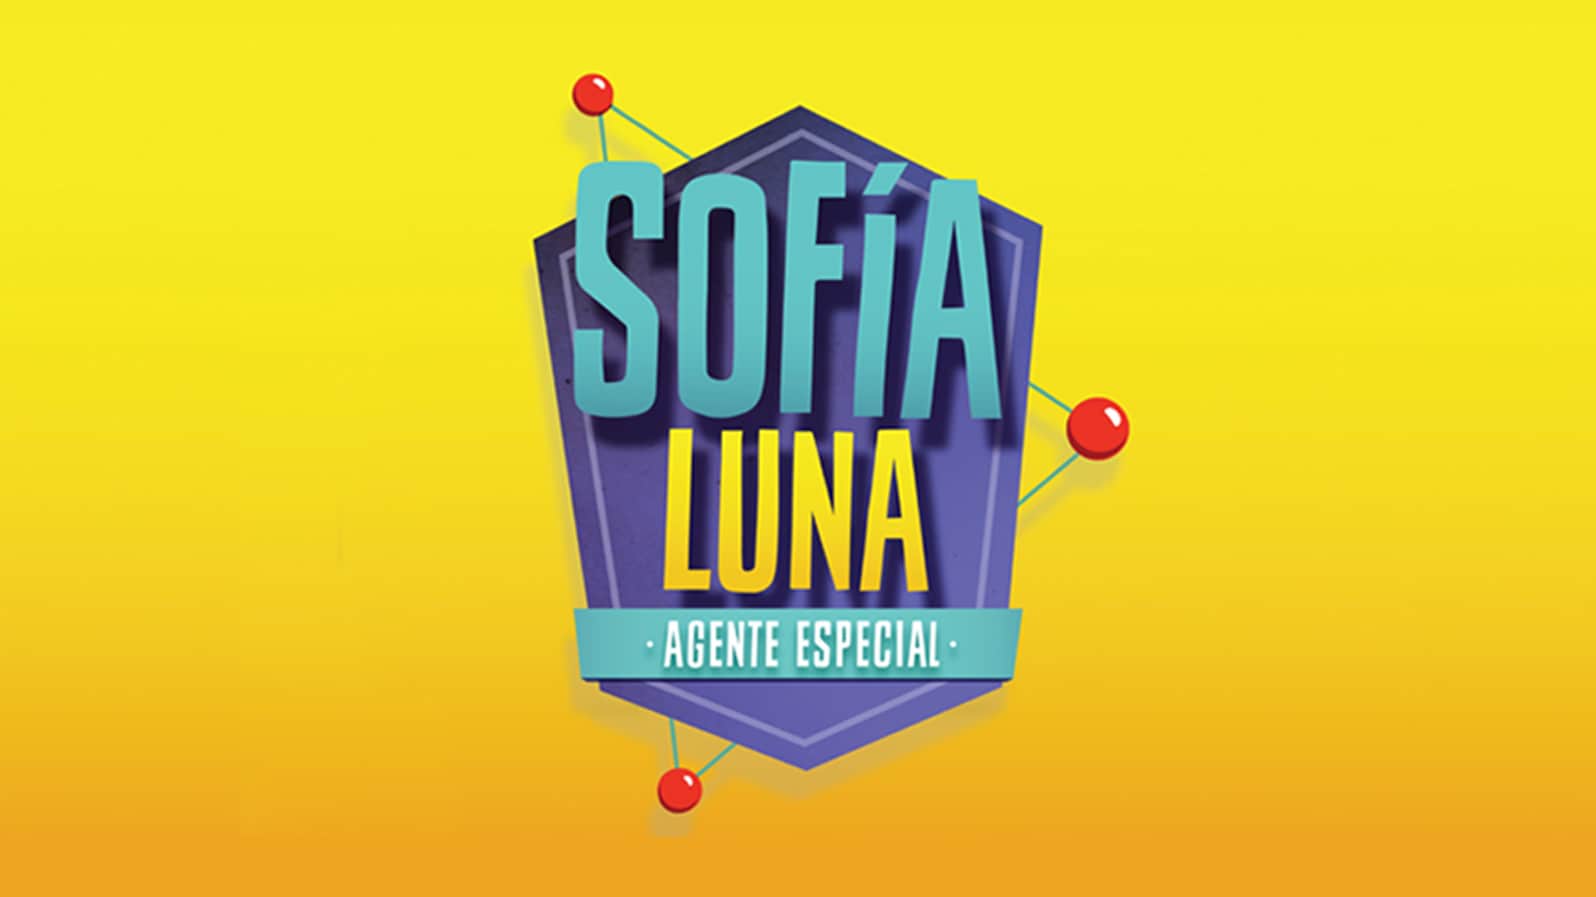 Sofía Luna, Agente Especial